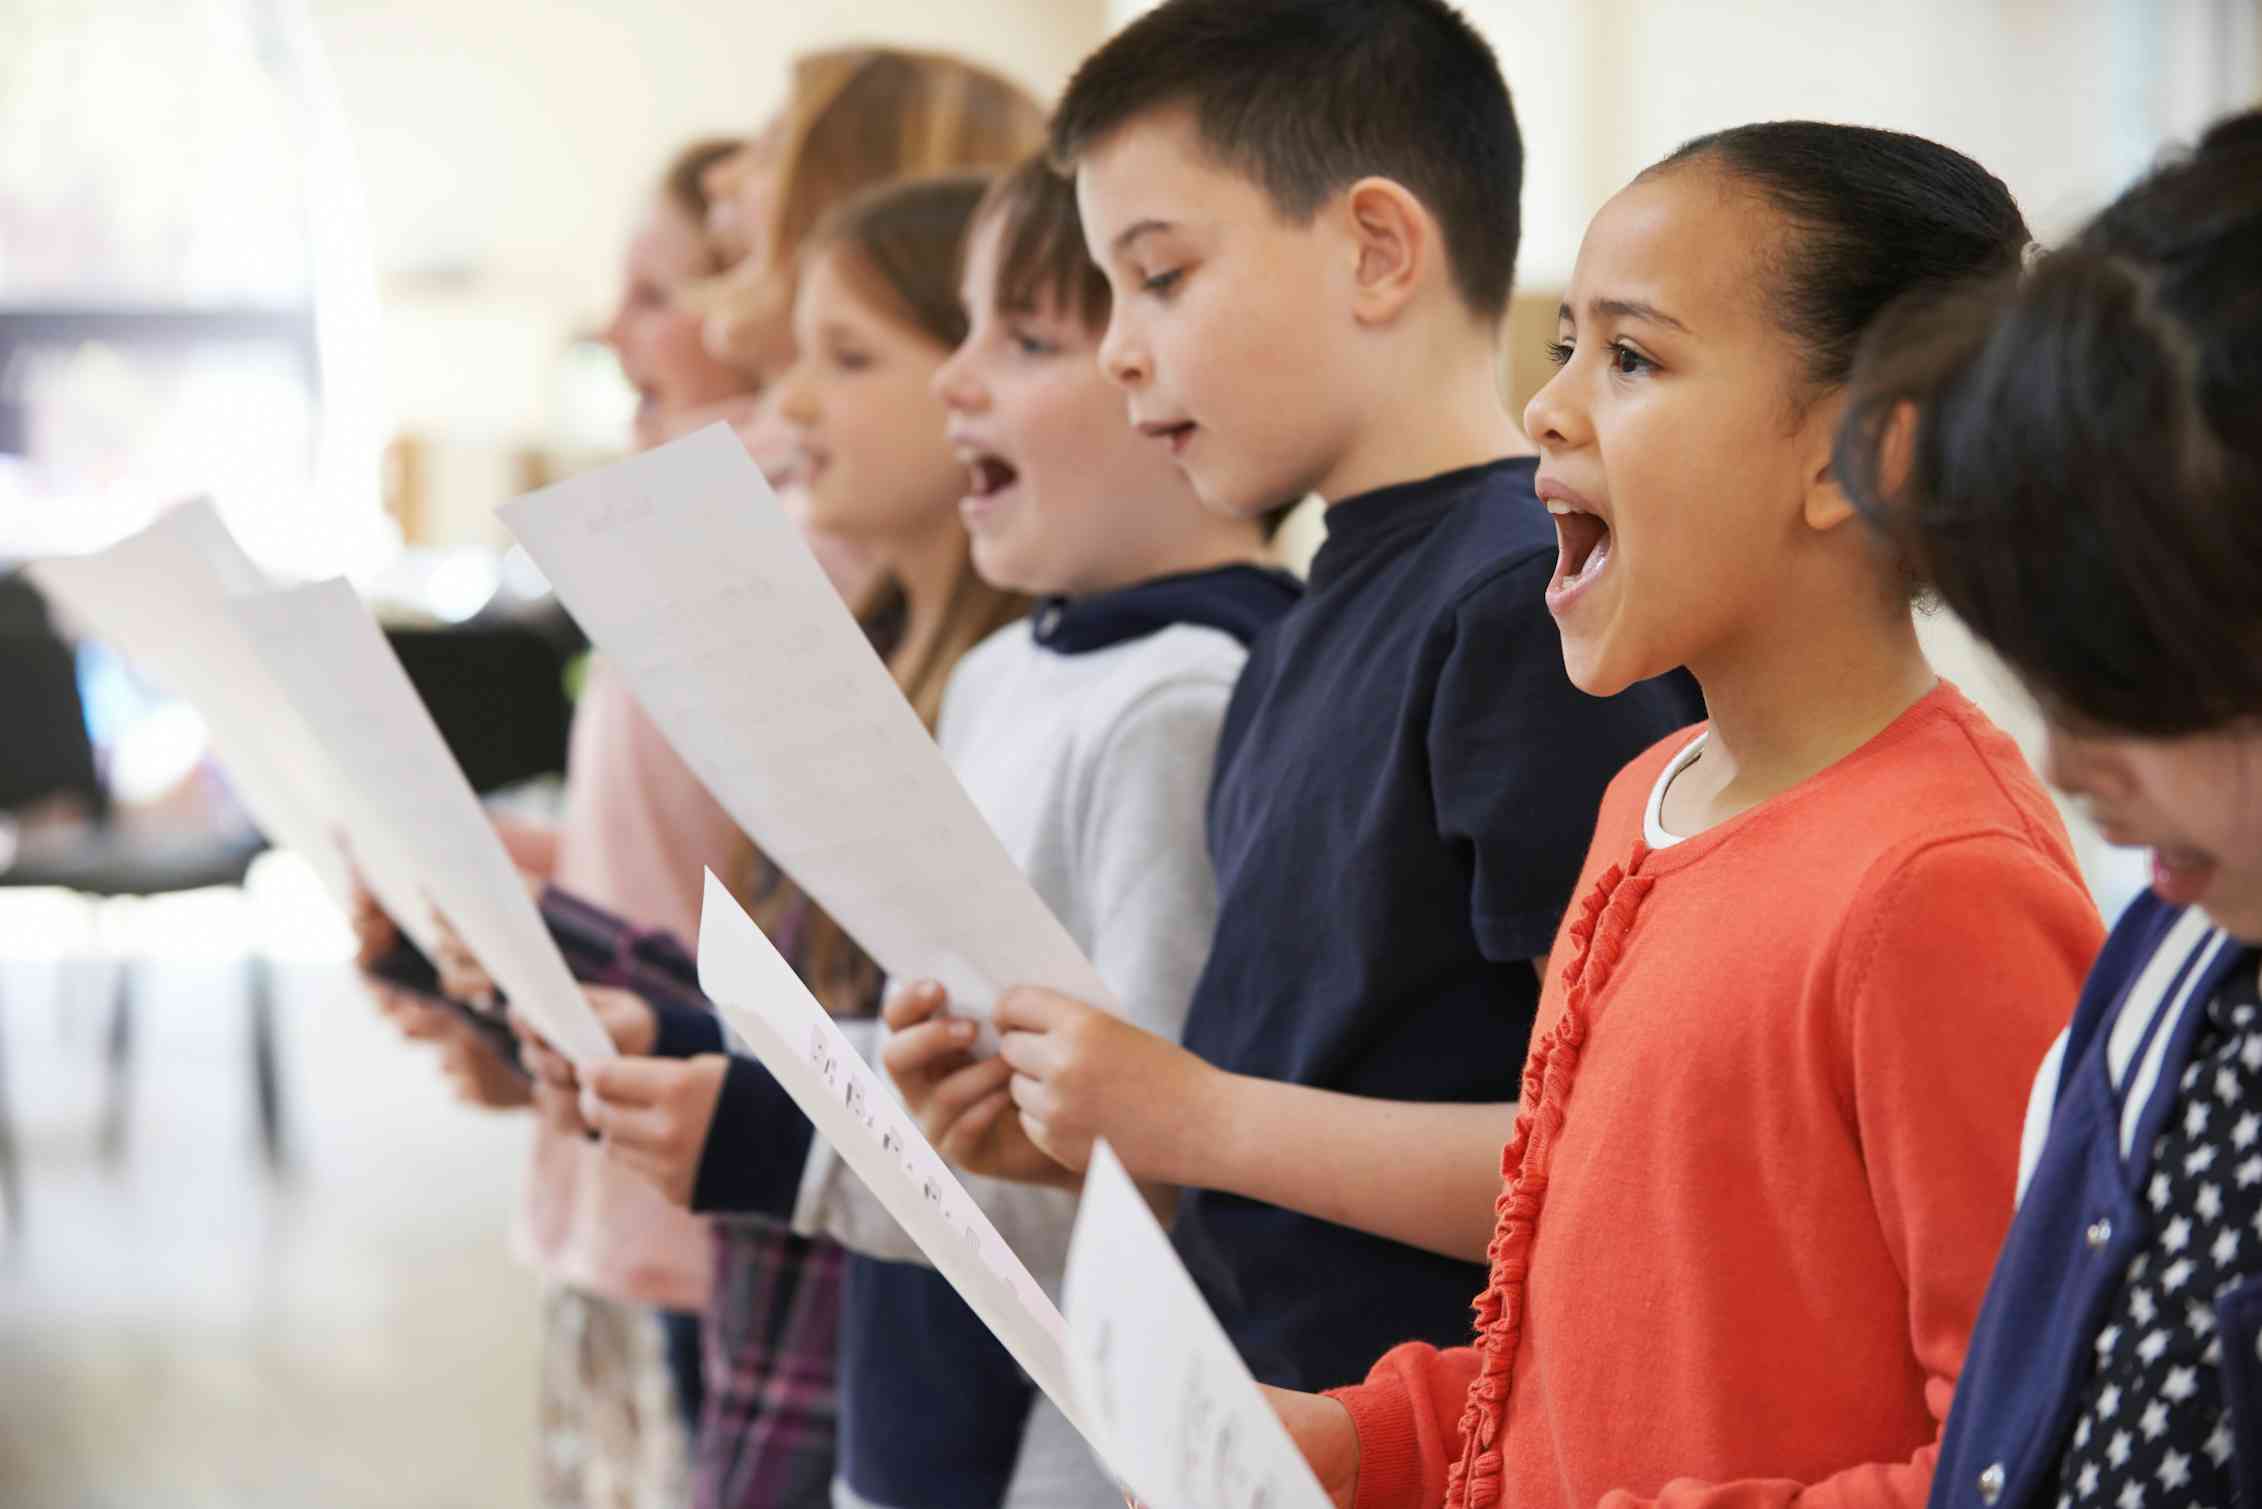 Children in a line singing